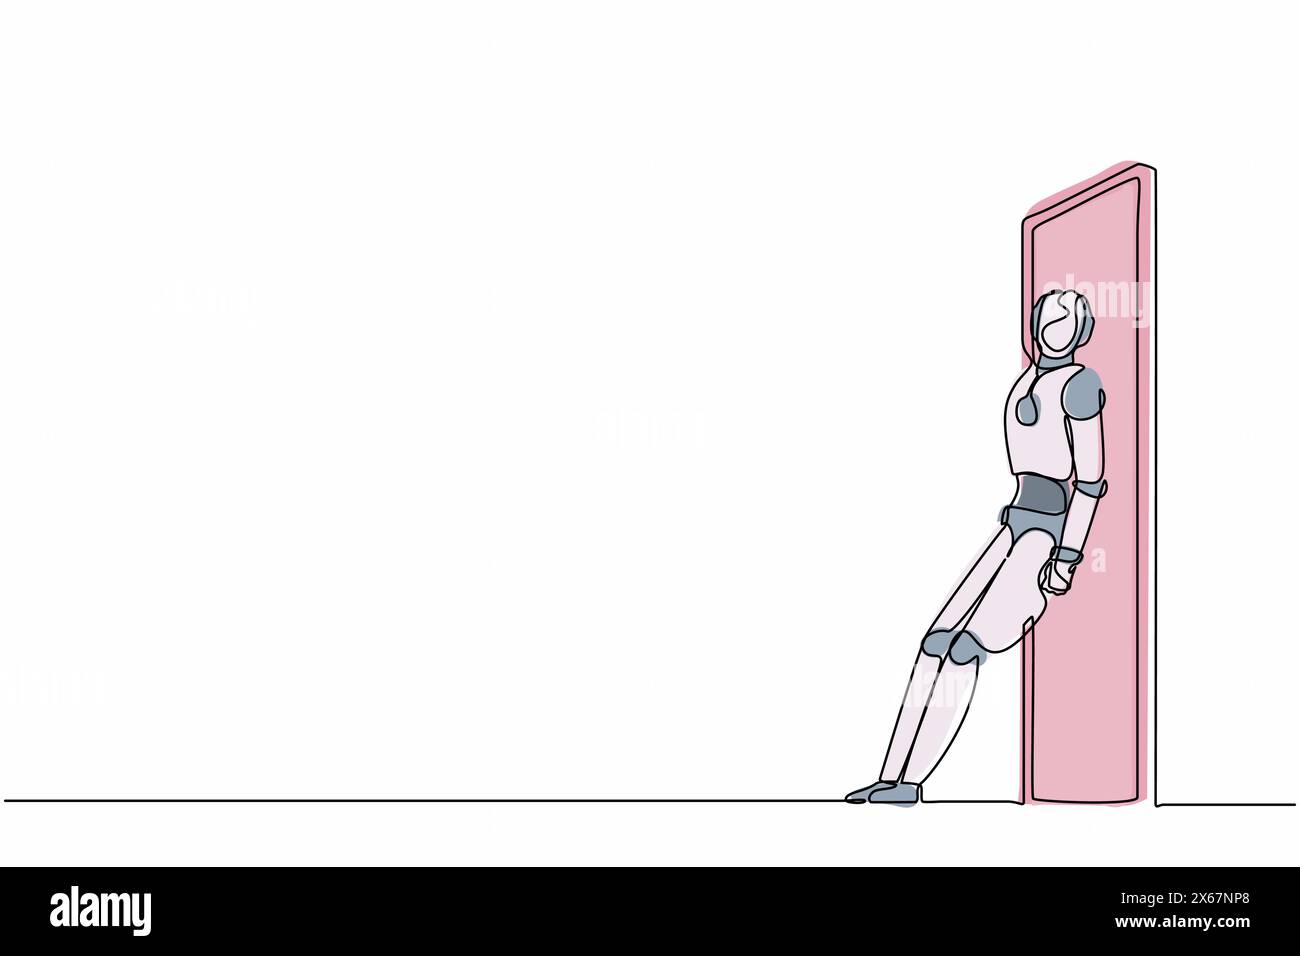 Kontinuierliche, einzeilige Zeichenroboter stehen und schieben die Tür mit ihrem Rücken. Humanoider Roboter-kybernetischer Organismus. Entwicklungskonzept für die Zukunft der Robotik. S Stock Vektor